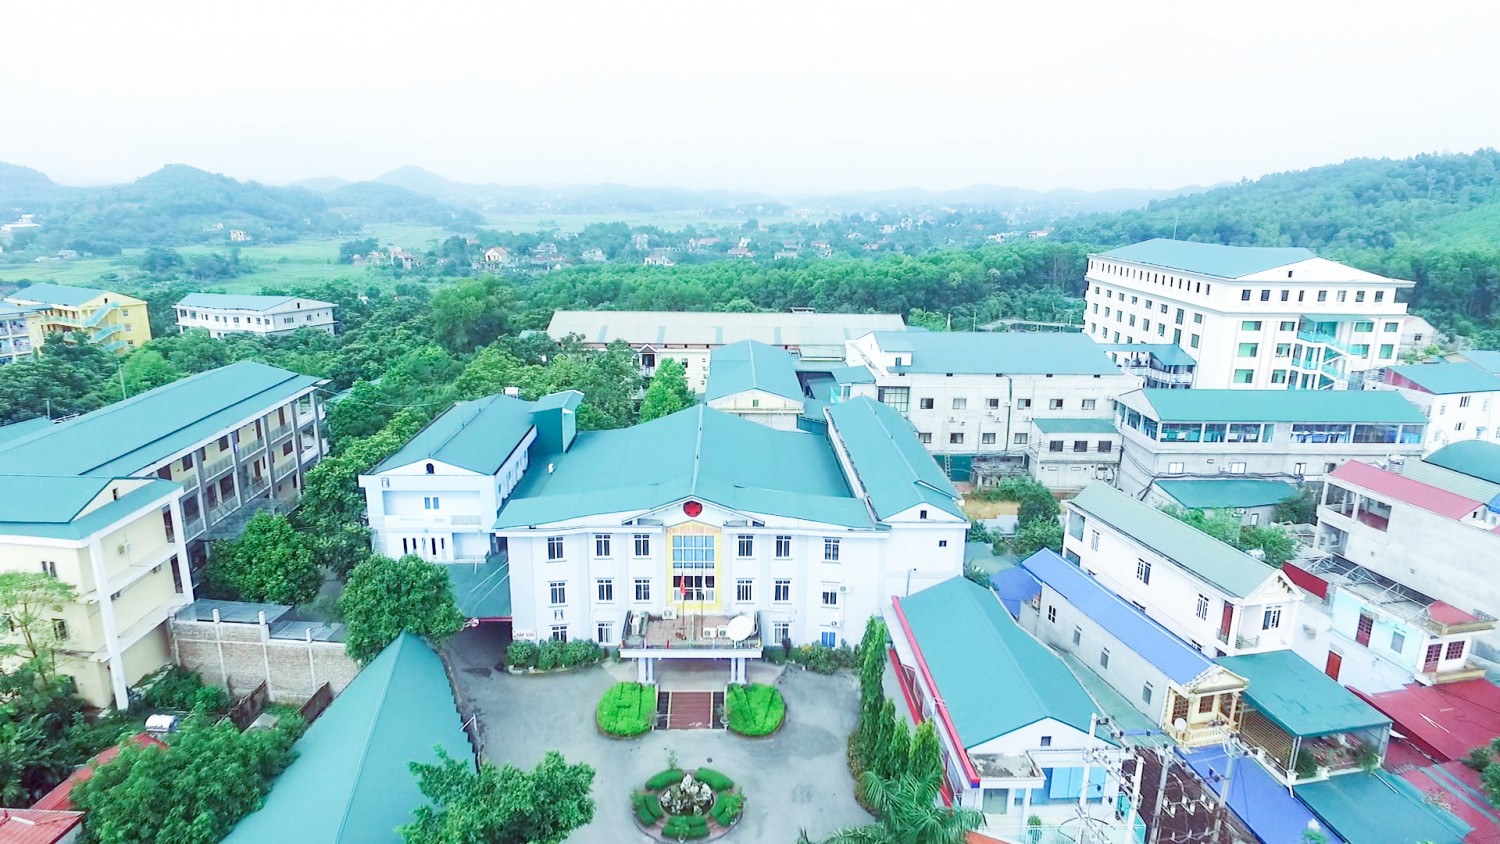 Bệnh viện đa khoa Hùng Vương